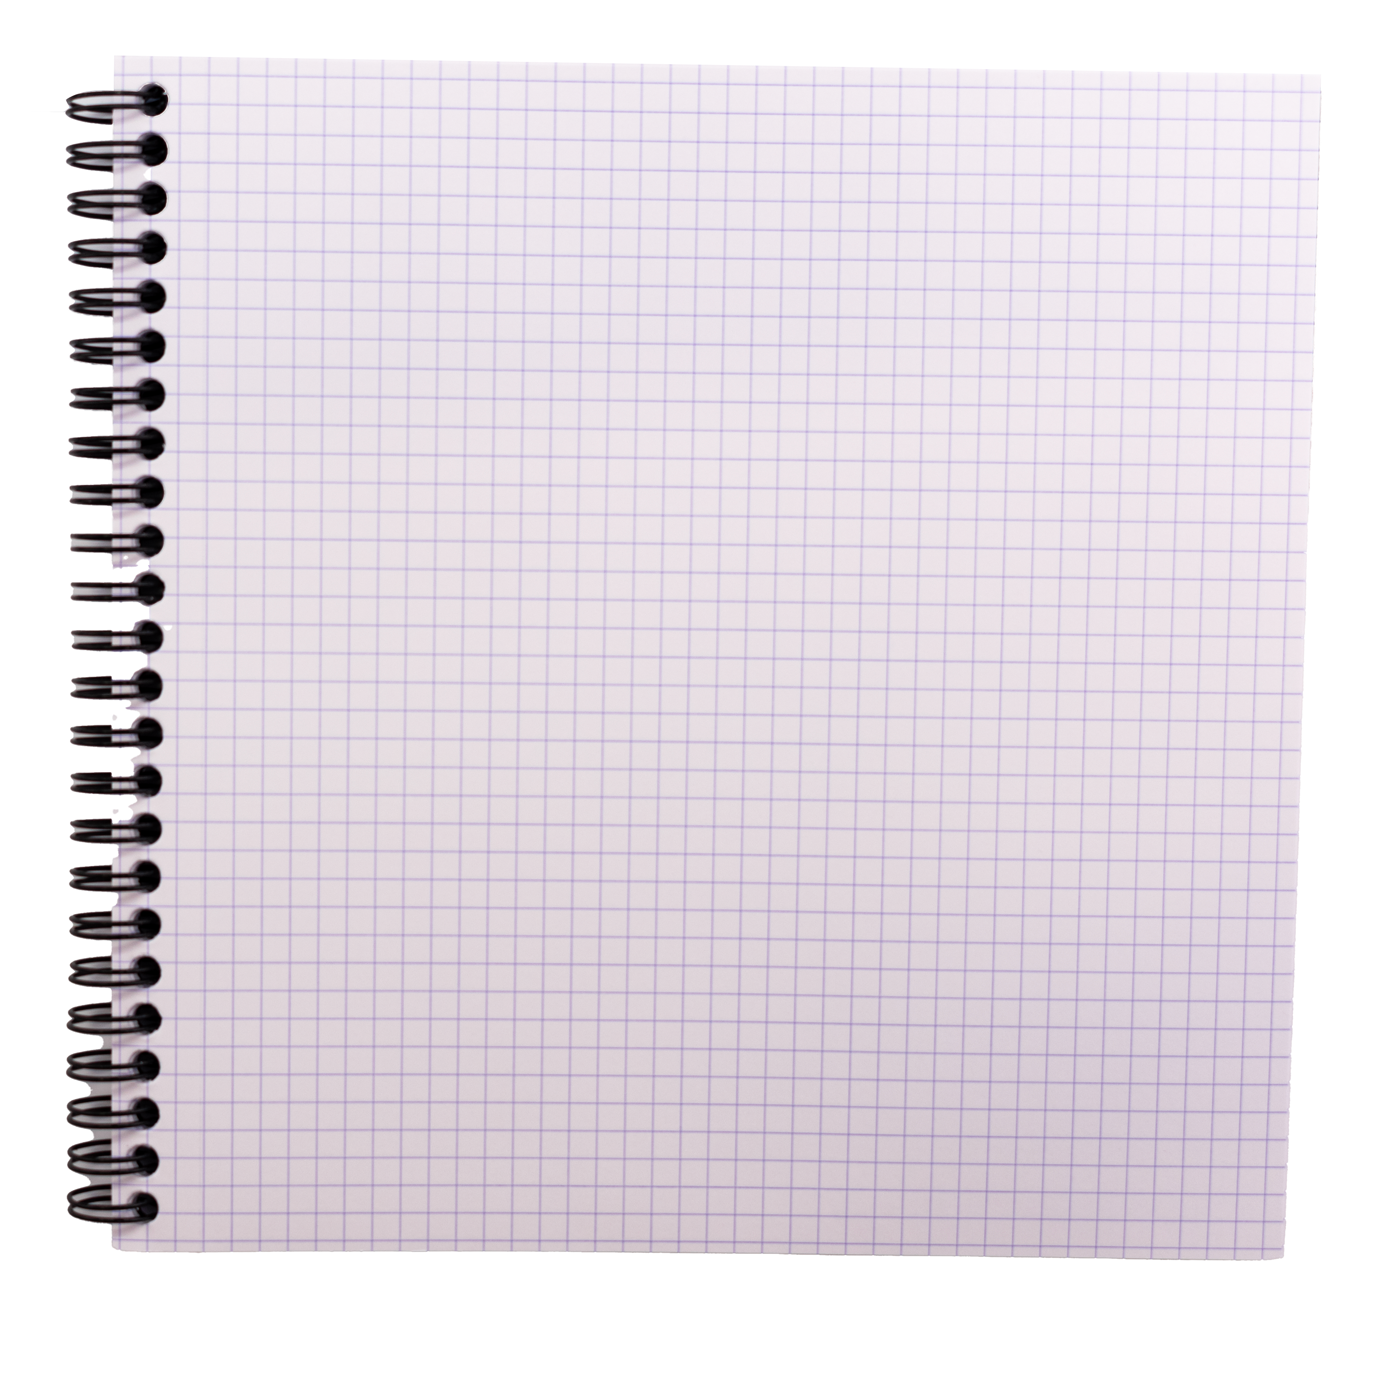 Rhodia Reverse Book Side Wire bound Notebook Grid 8.25 x 8.25